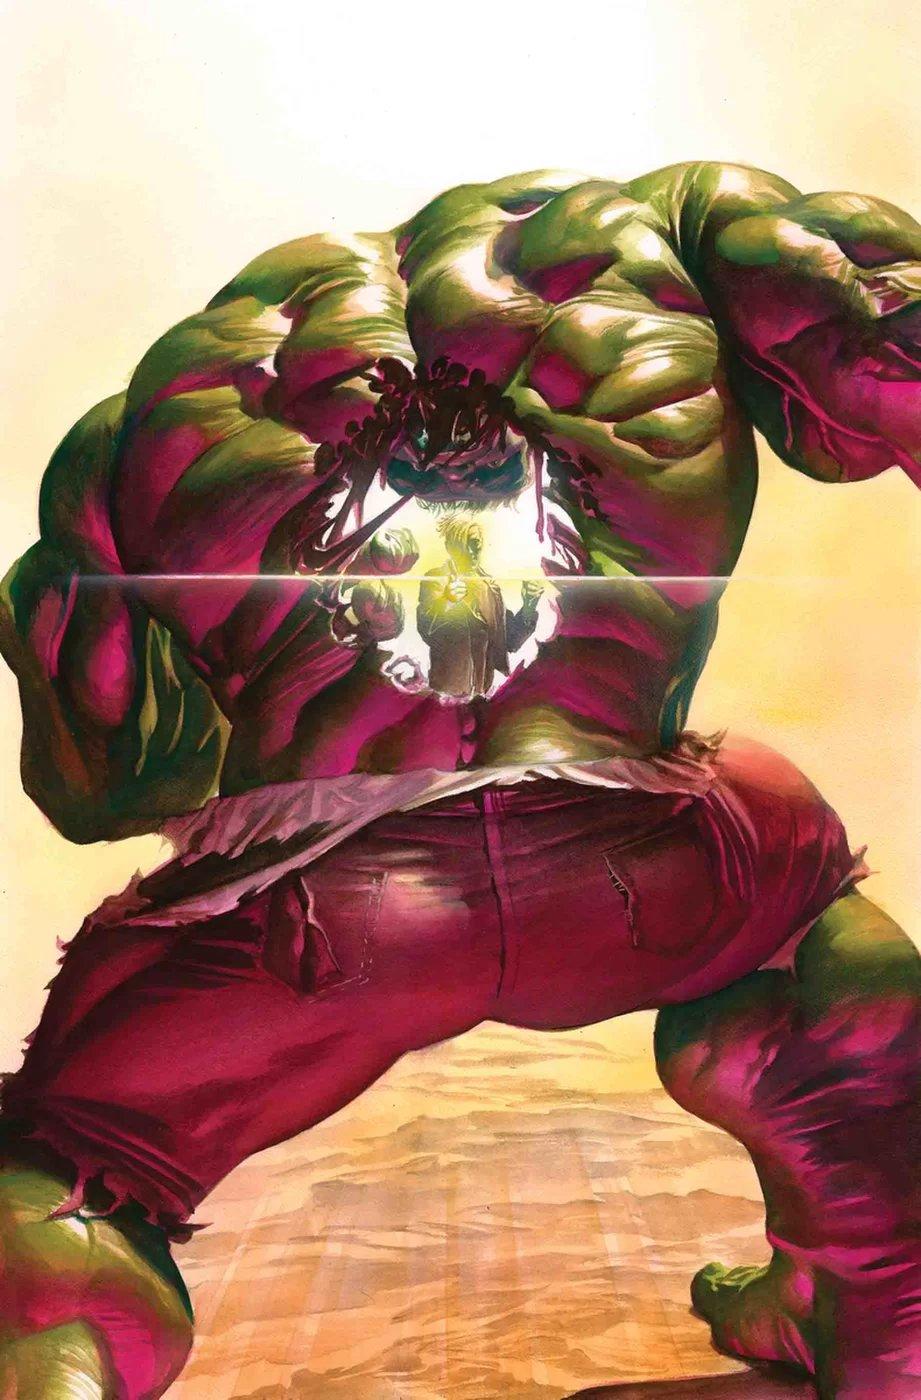 Immortal Hulk Vol. 1 #3